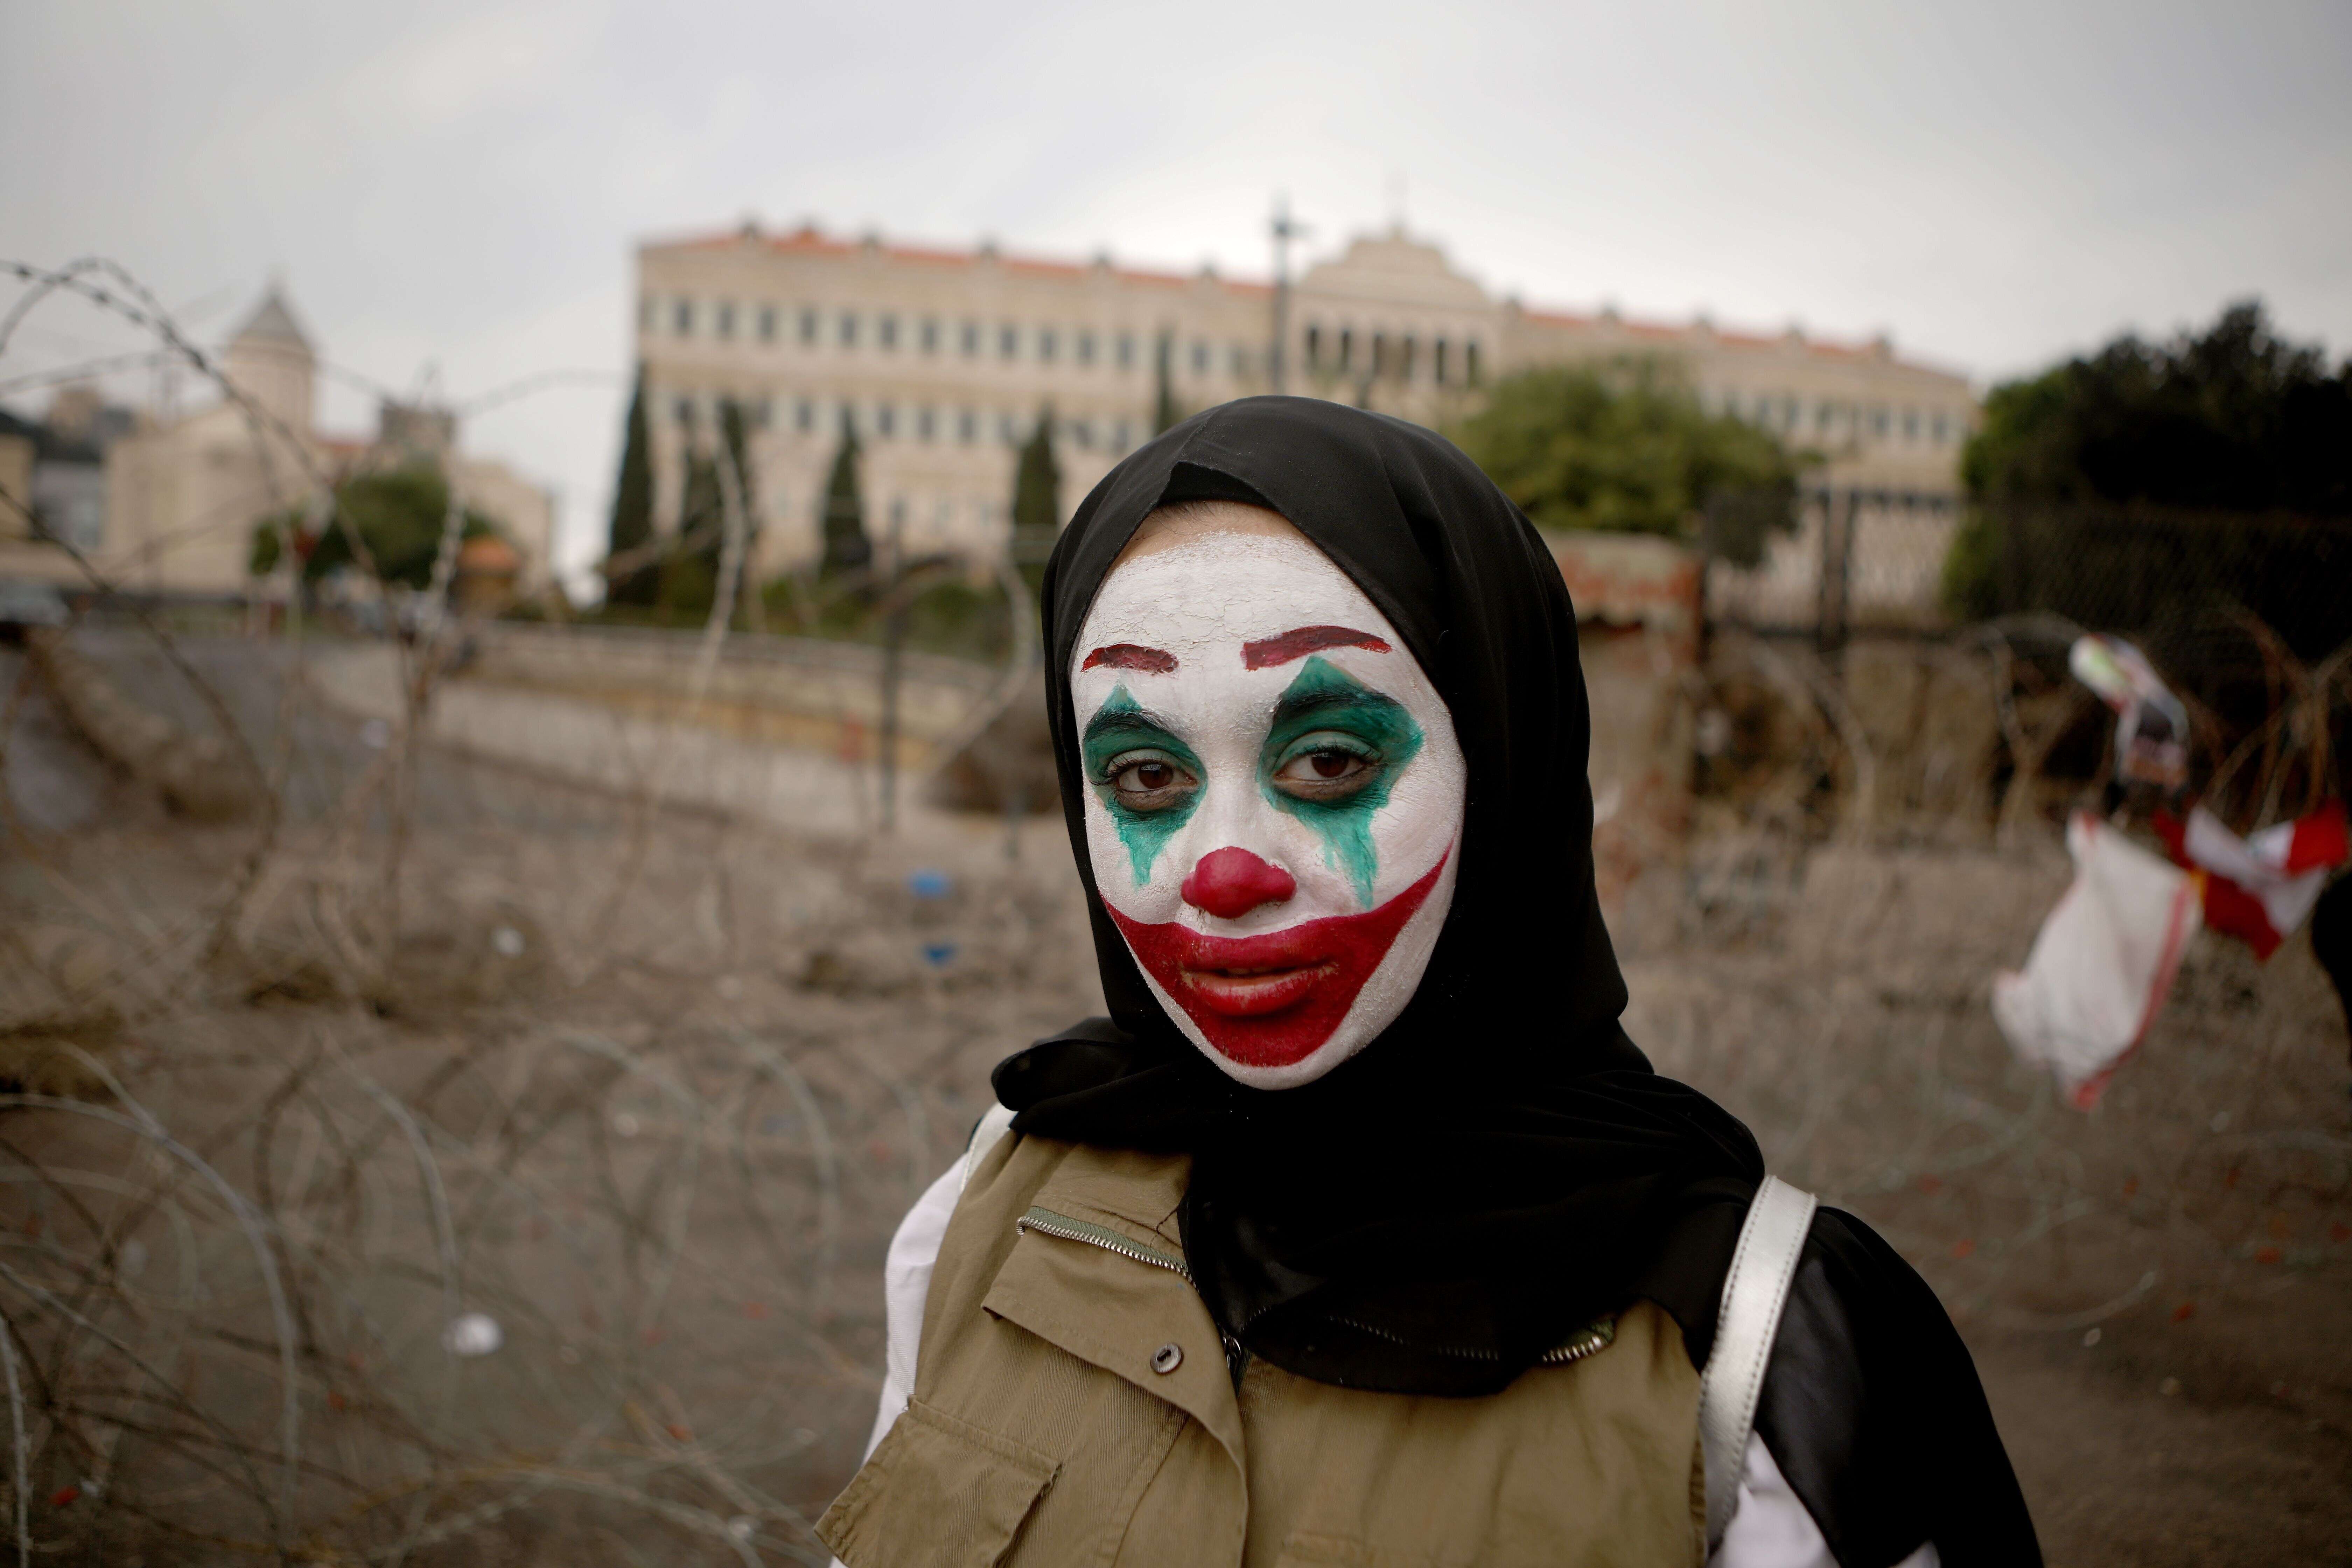 Une libanaise manifeste en arborant le maquillage du Joker, afin de réclamer de meilleures conditions de vie et le renvoi d'une classe politique corrompue, à Beyrouth, le 23 octobre 2019.